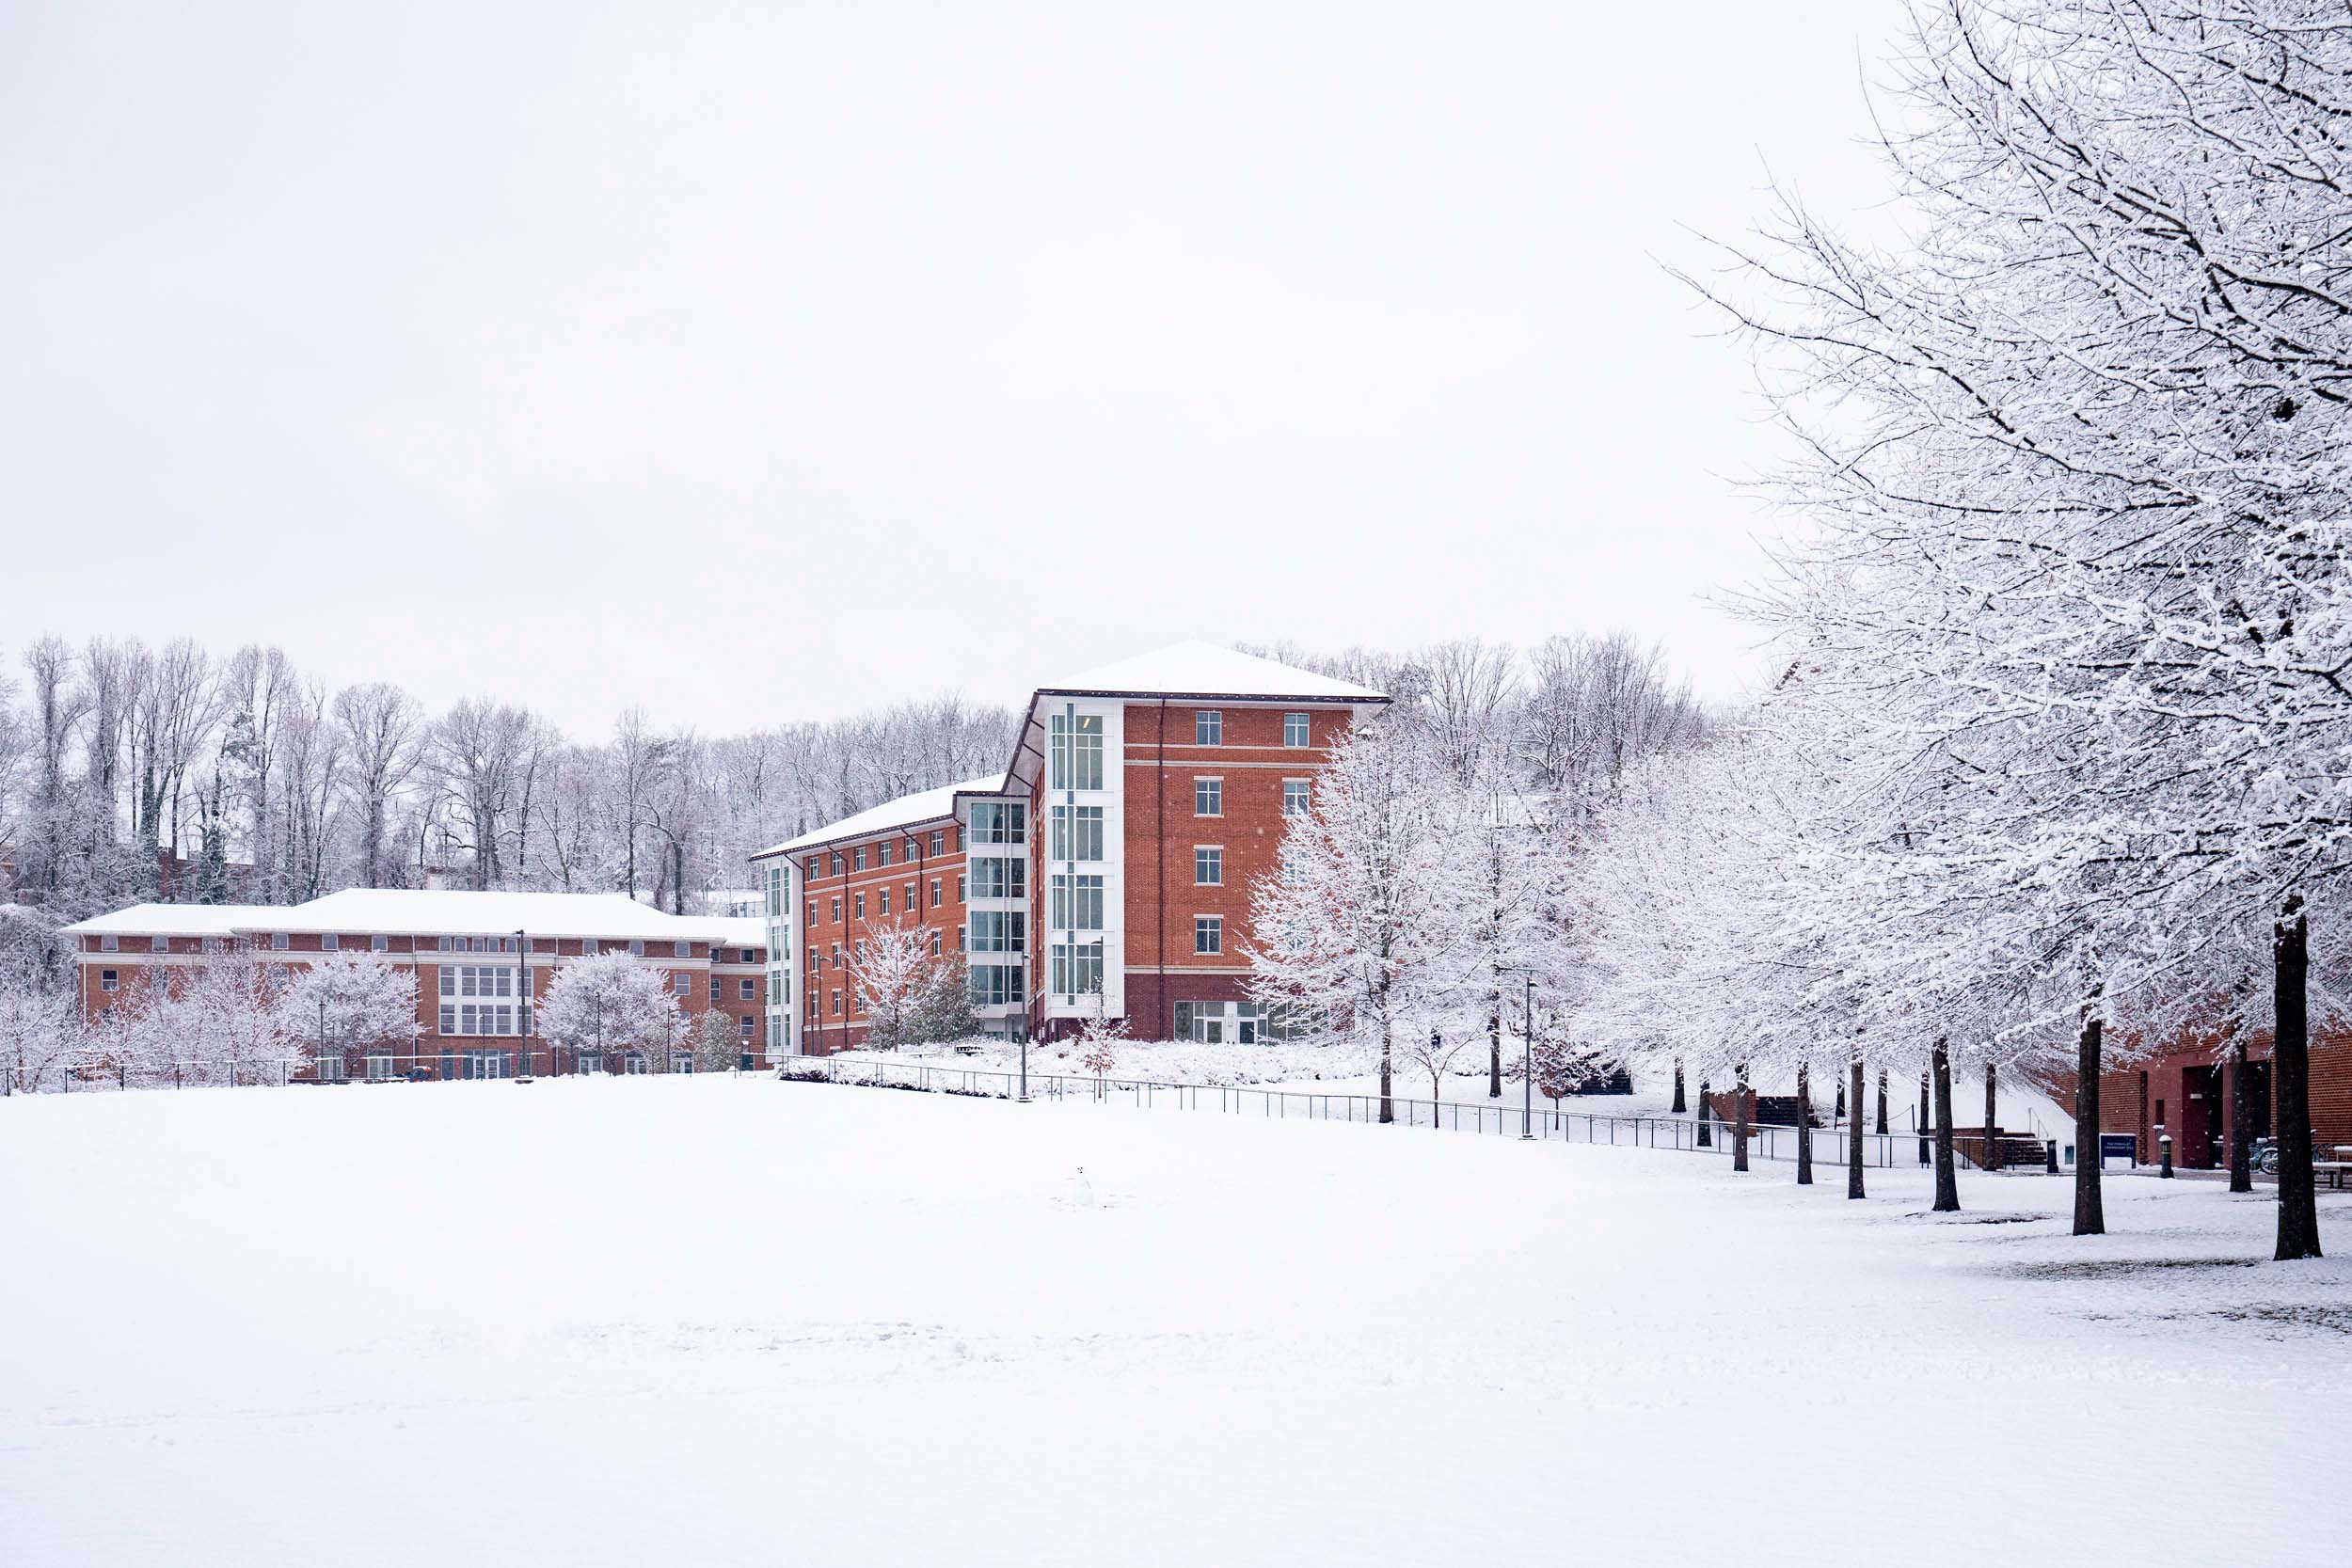 UVA dorm covered in snow